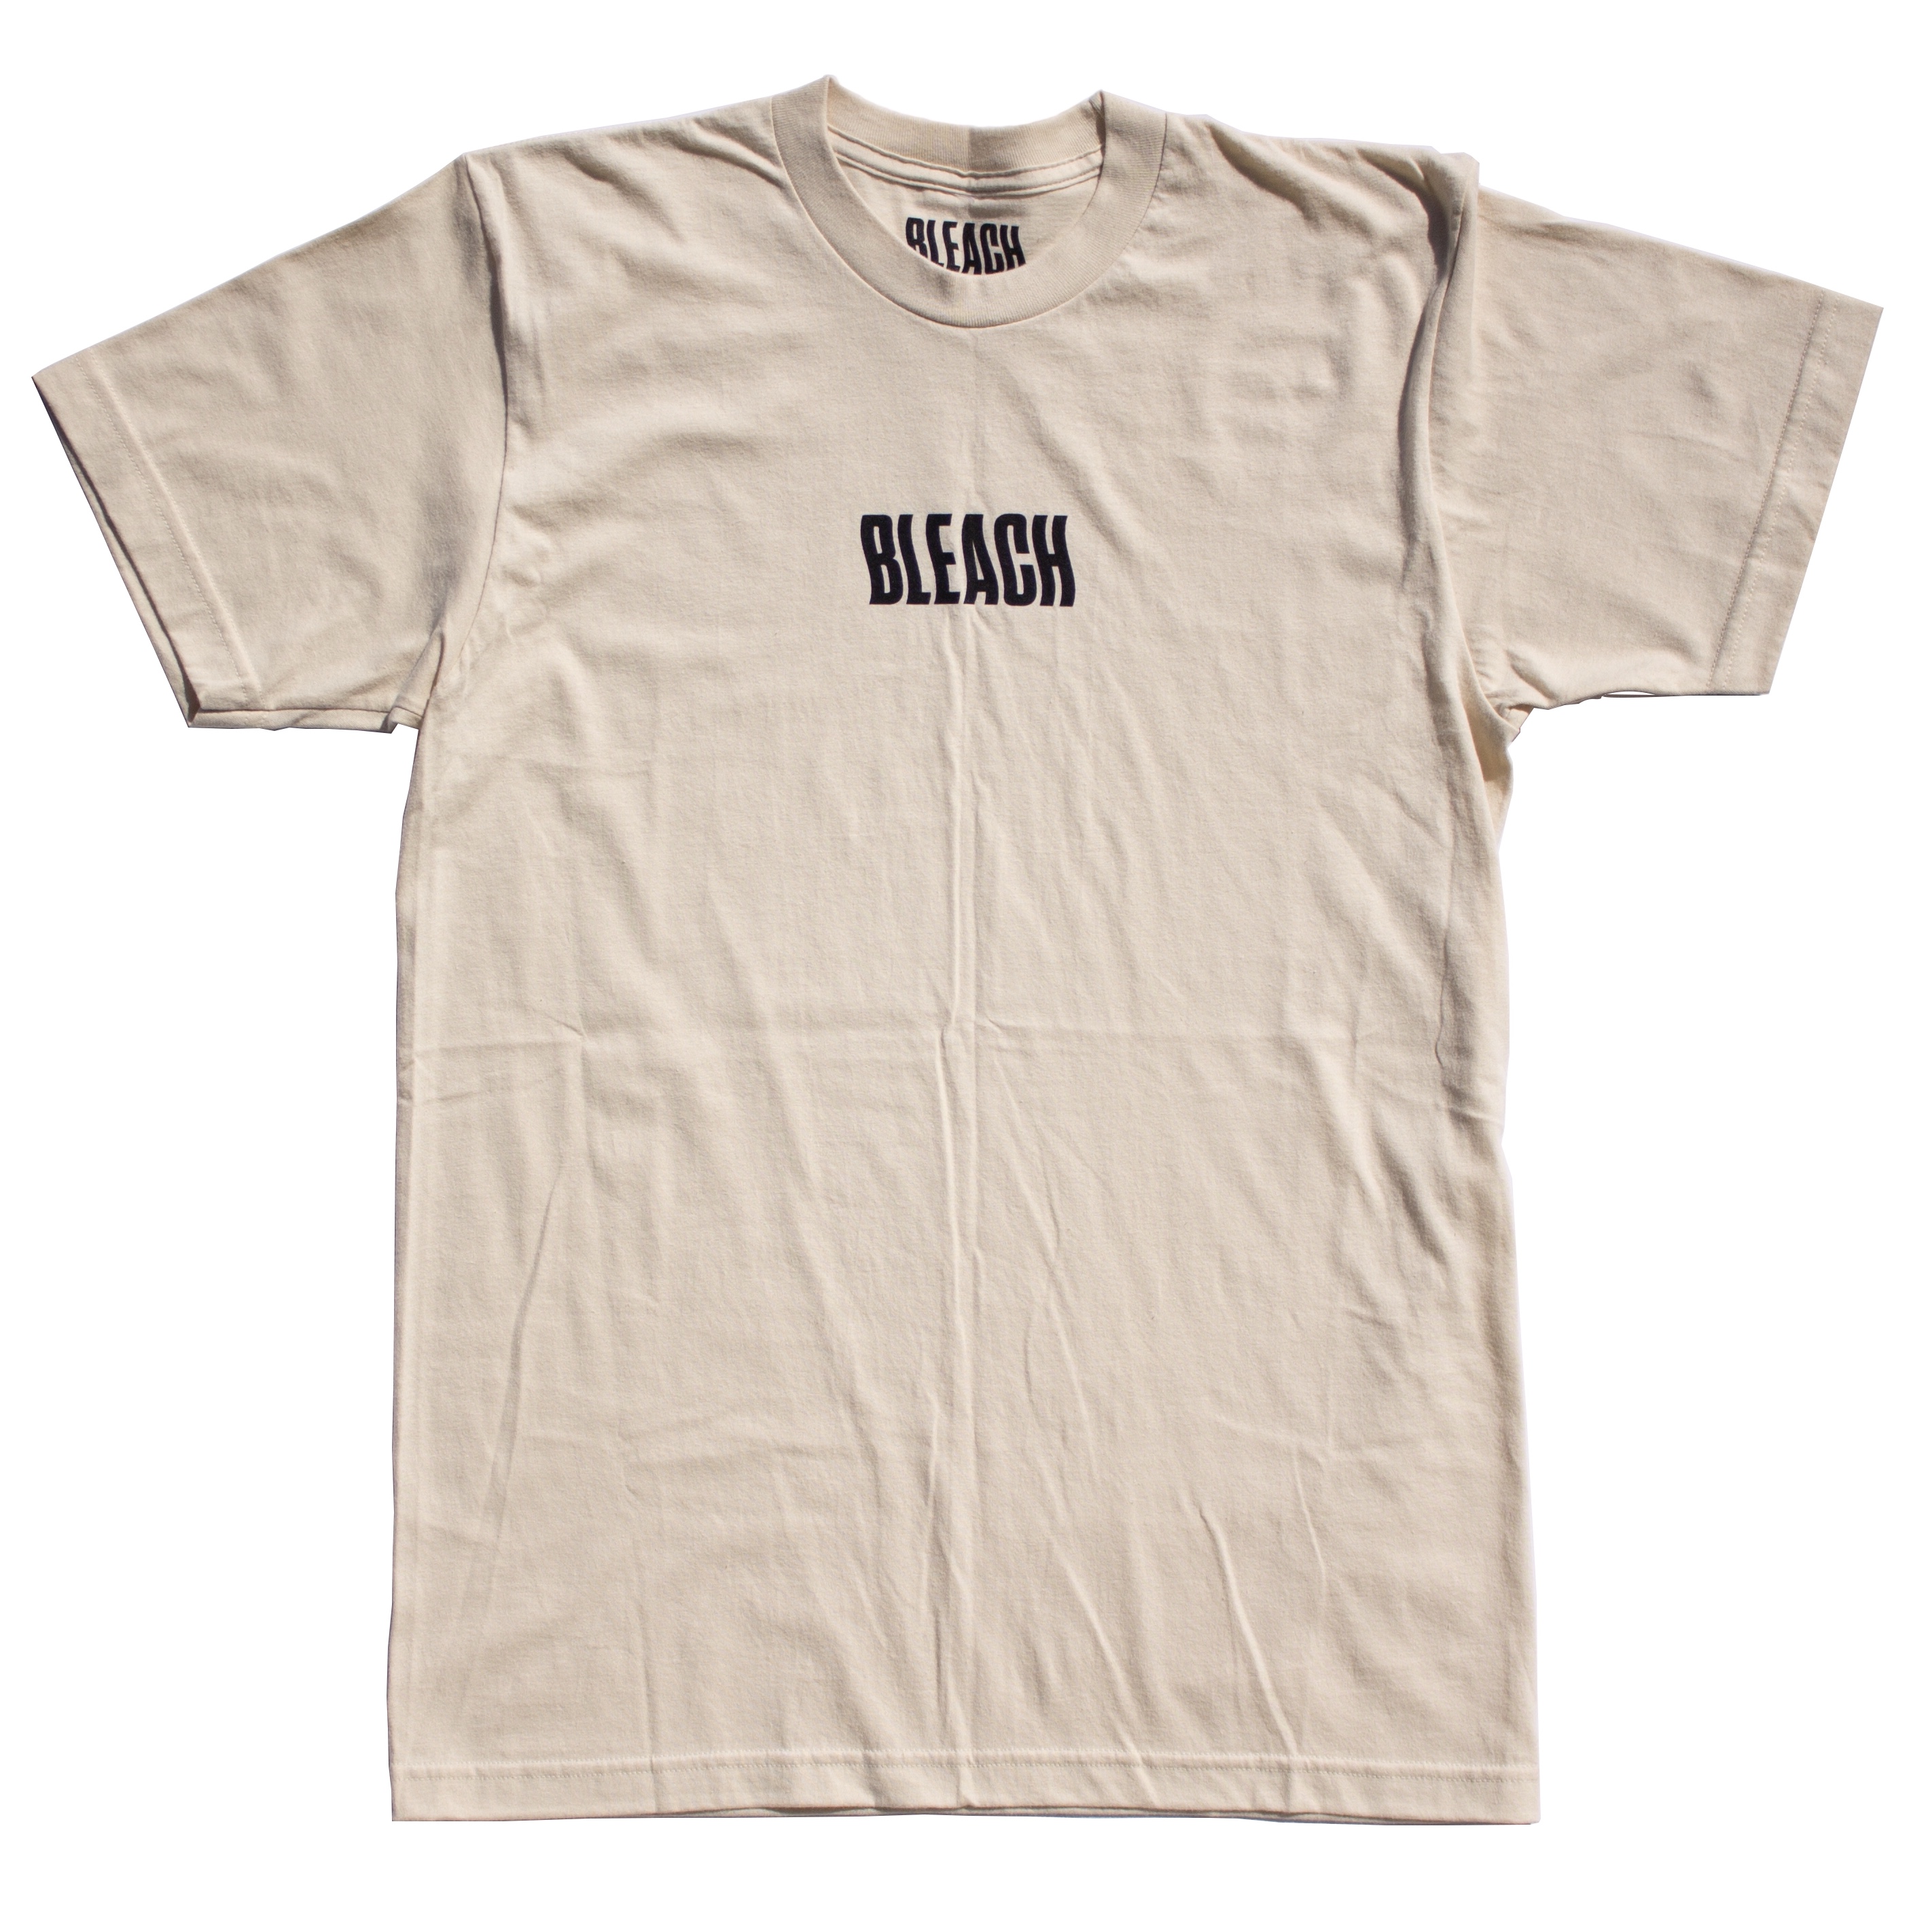 Bewusteloos dood kraam Creme T-Shirt - Bleach Lab